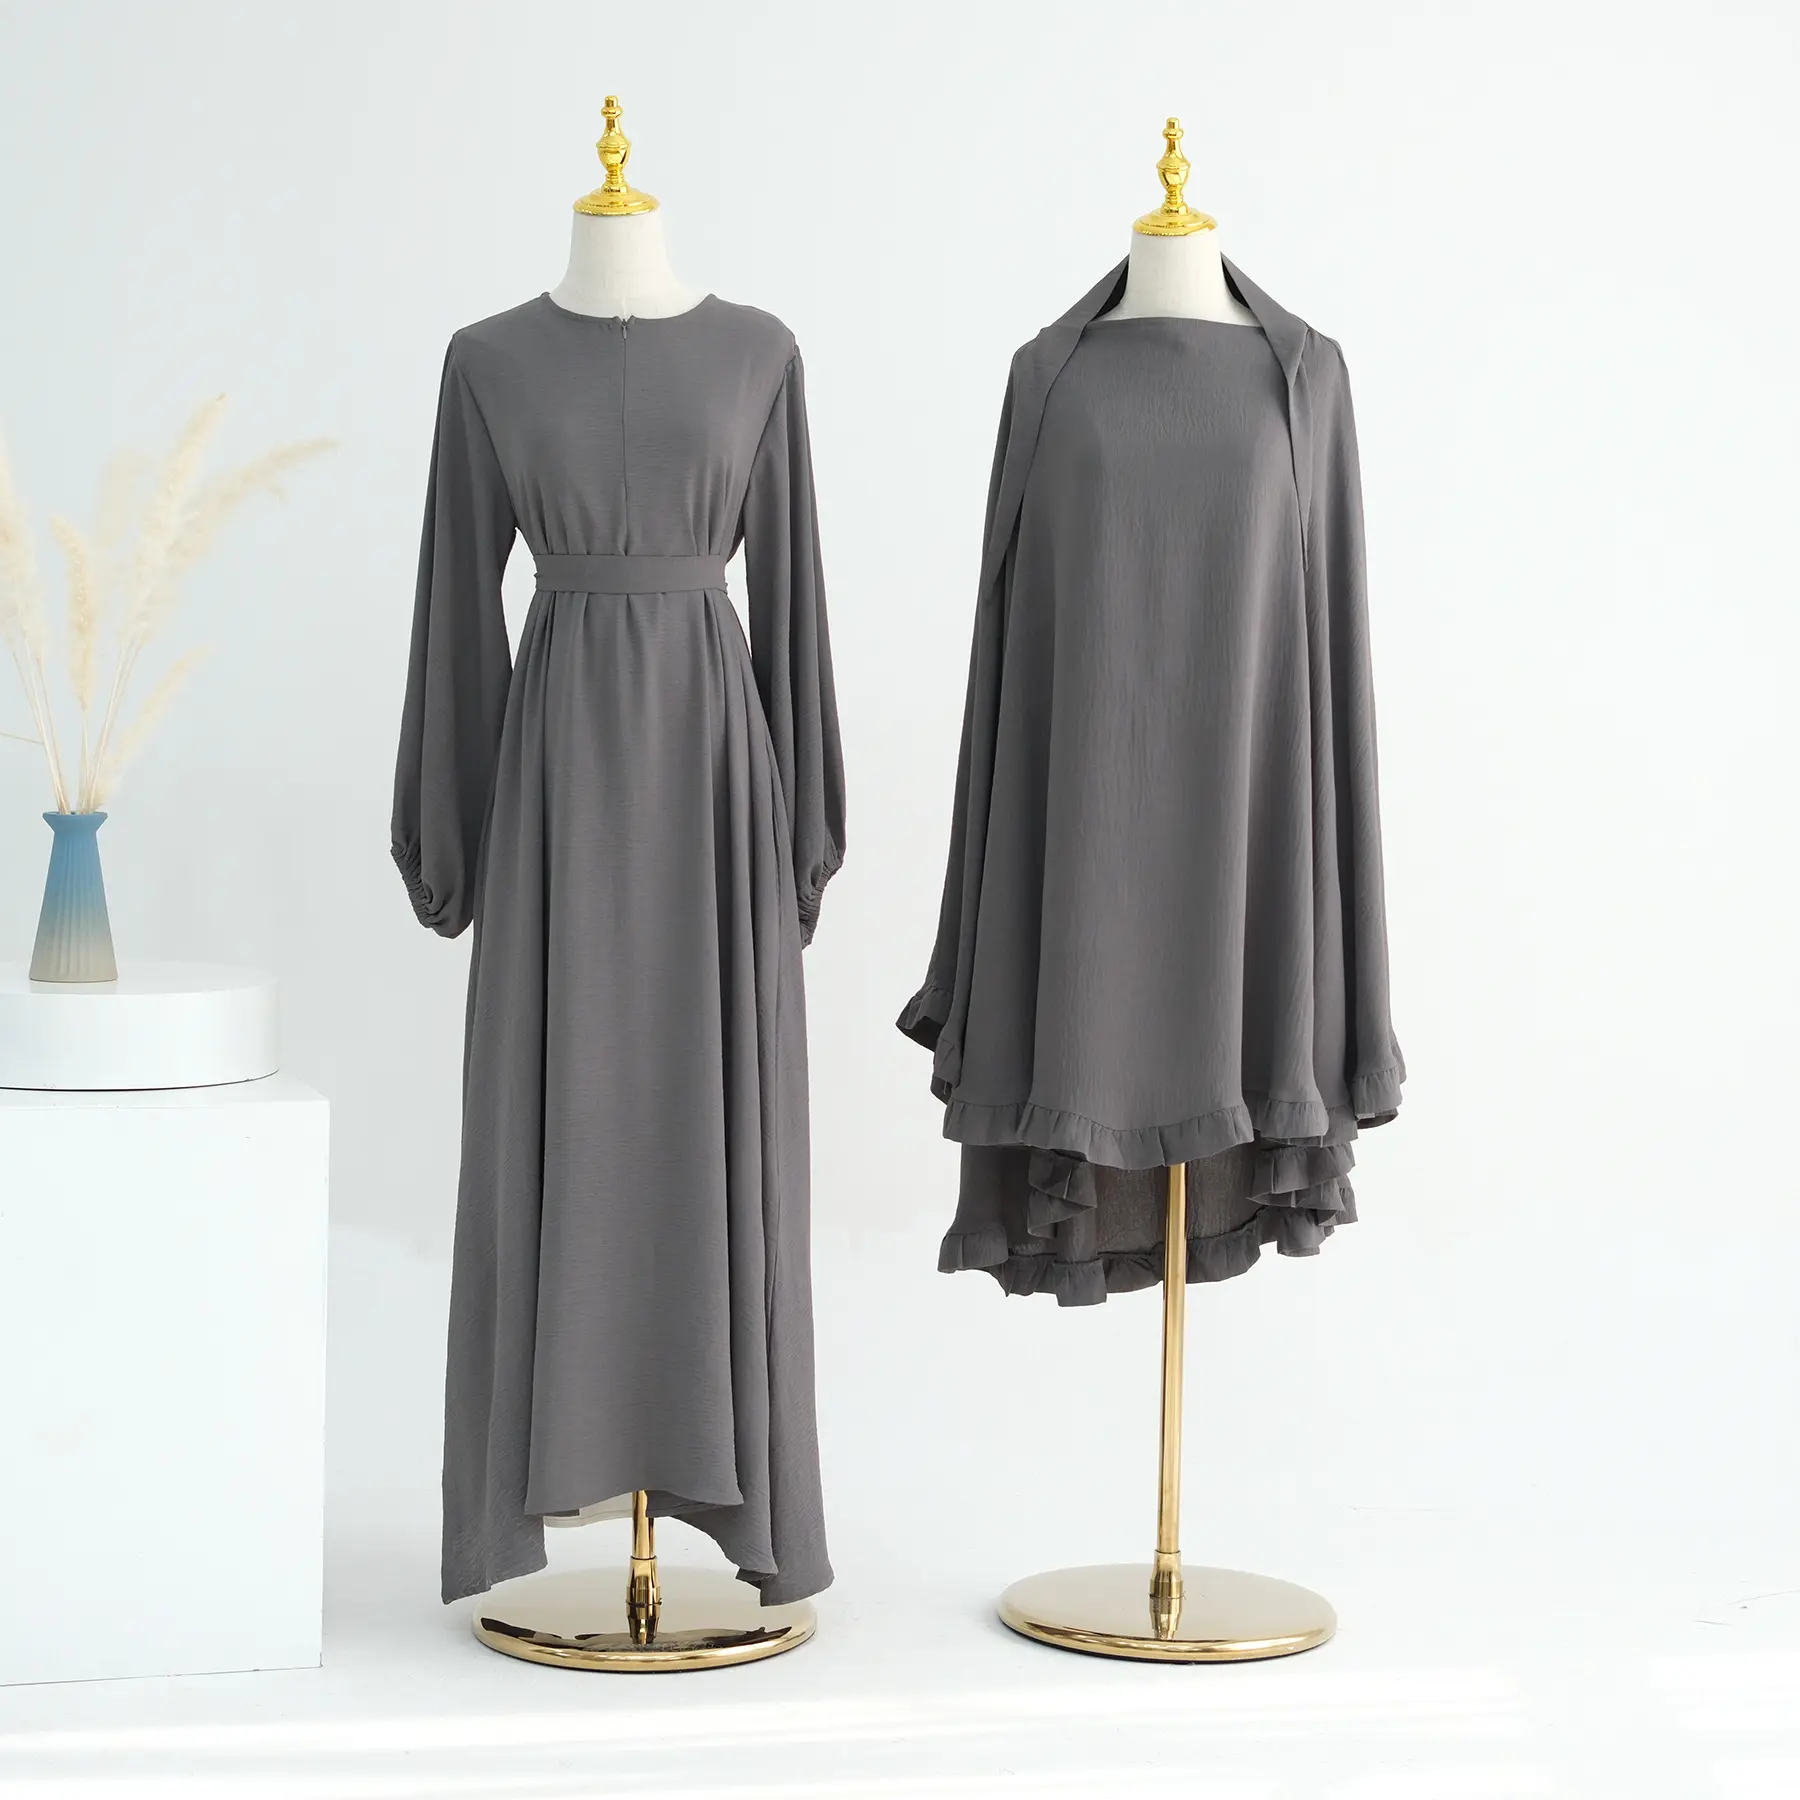 Robe de mode musulmane à manches longues en soie grise de qualité supérieure abaya musulmane pour femme robe musulmane pour femme